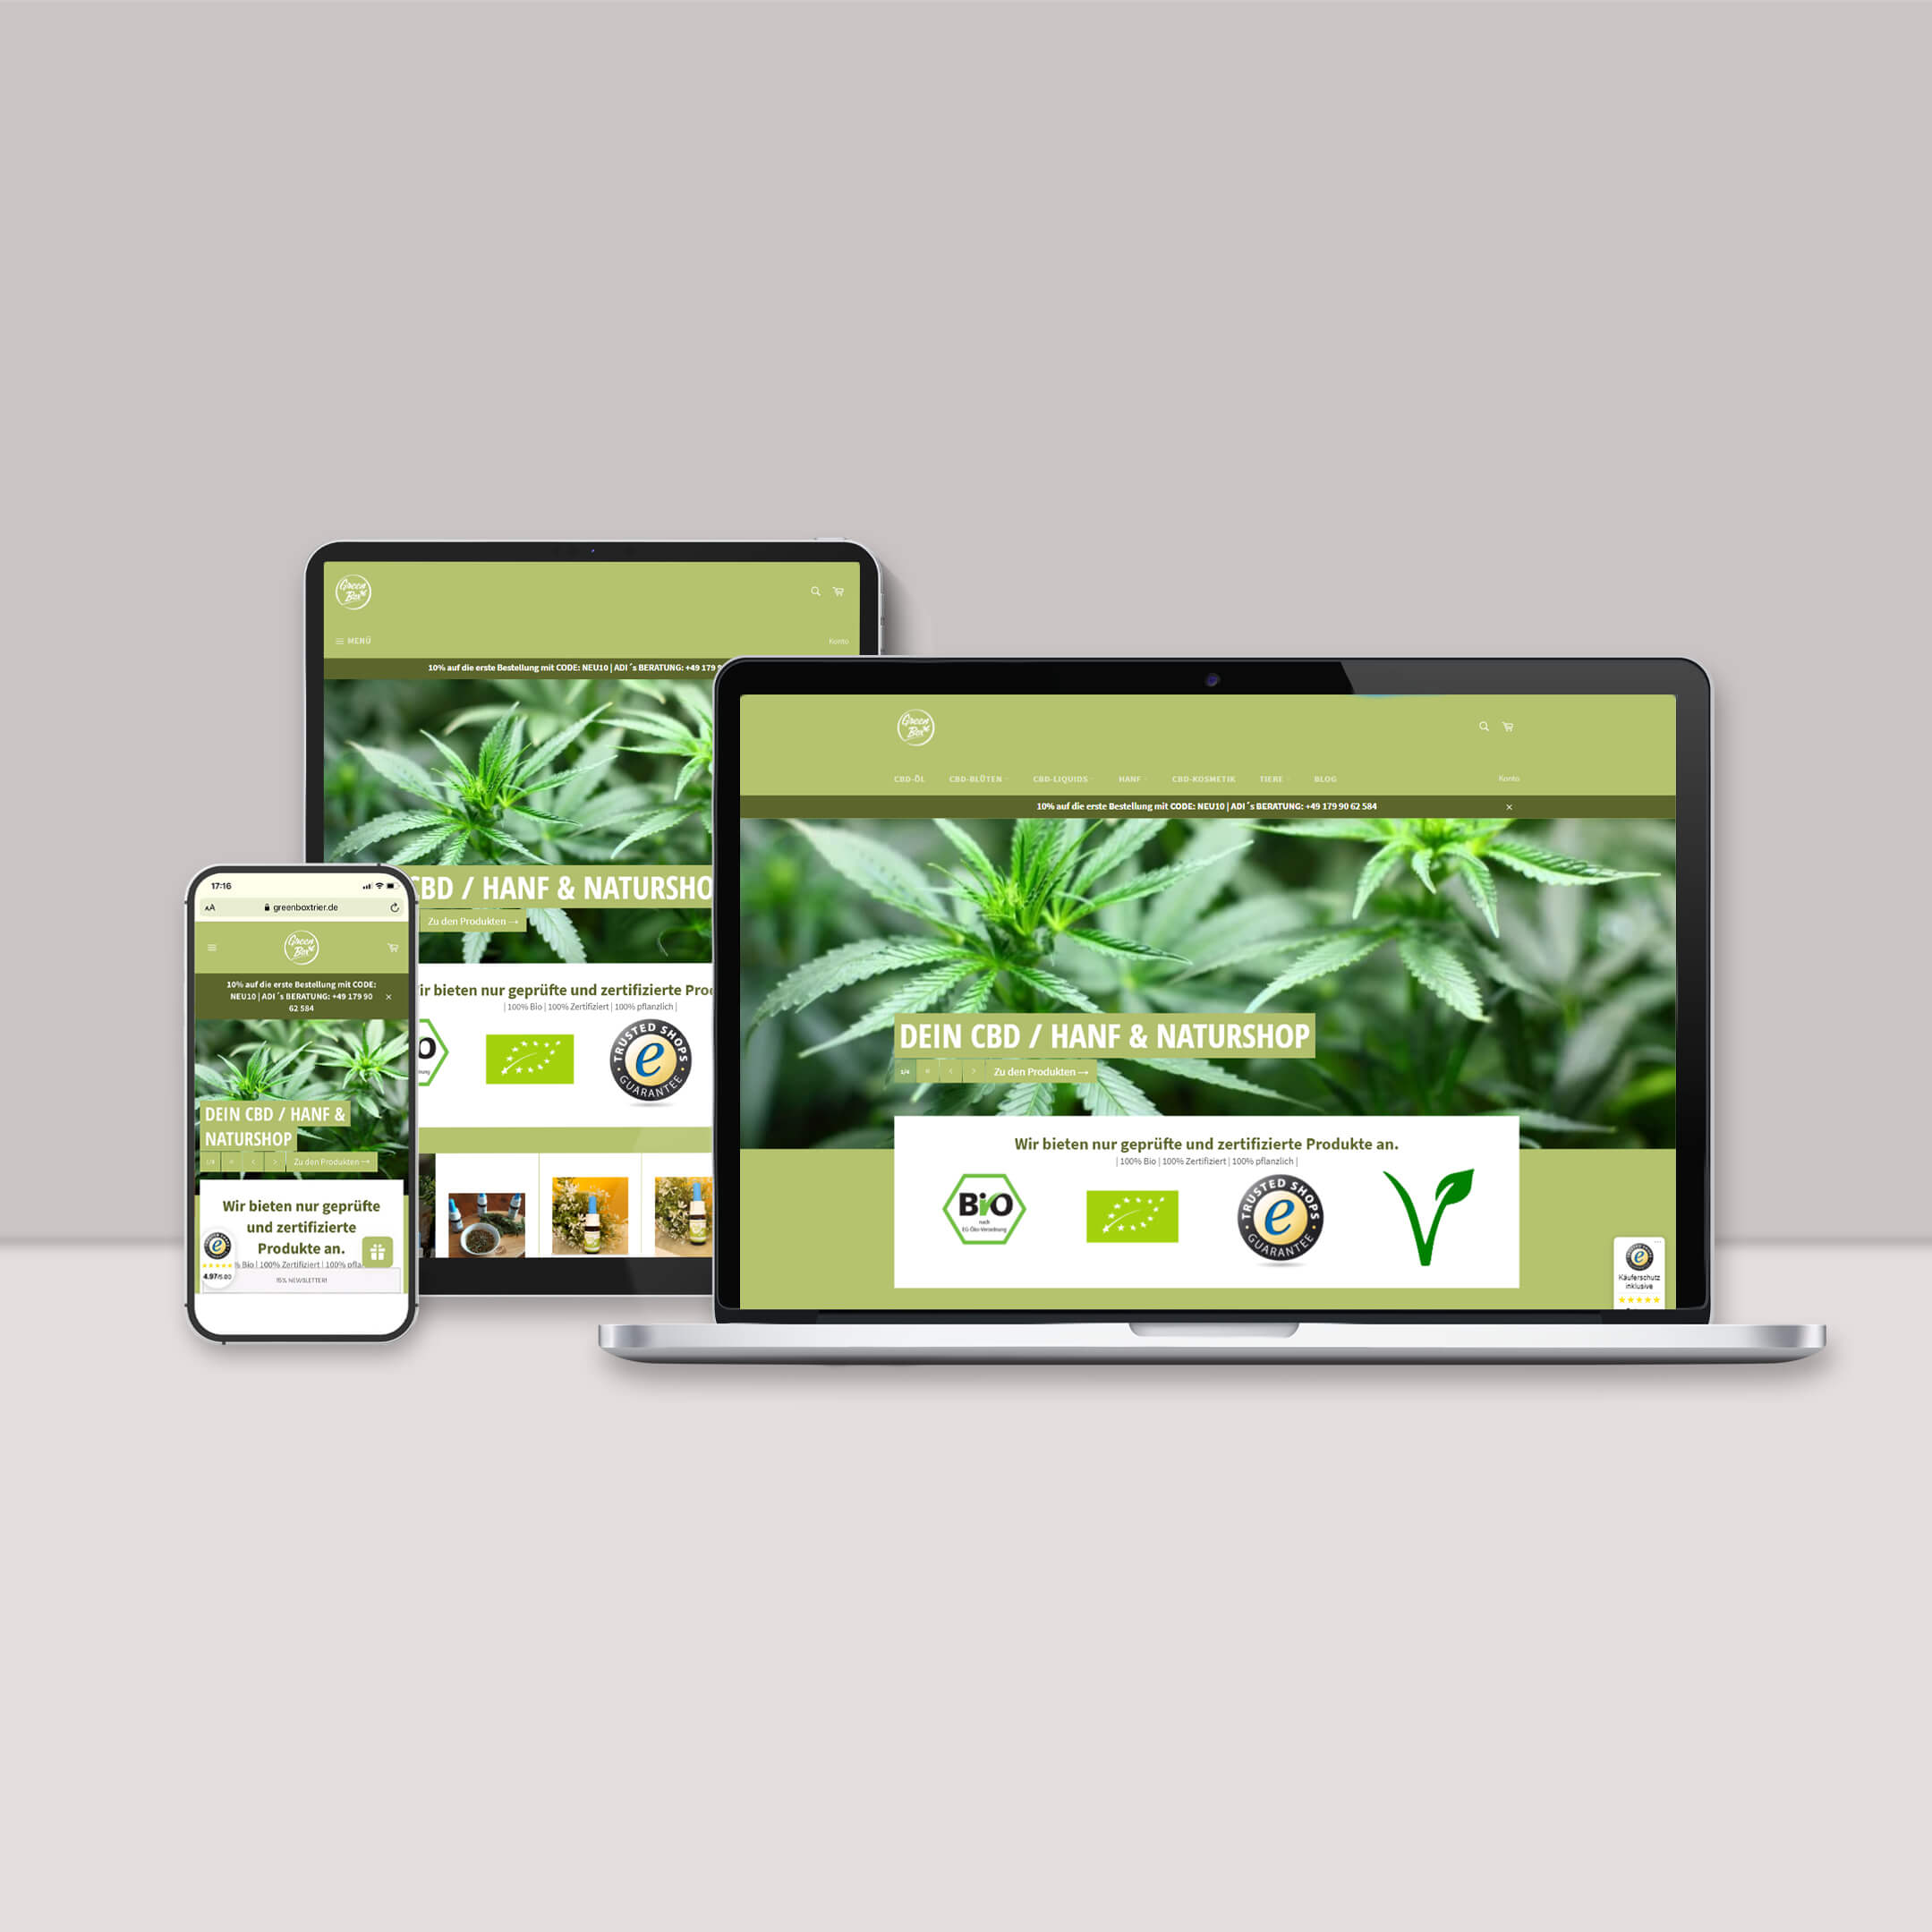 Darstellung des Online-Shops von der Green Box Trier auf Desktop und mobilen Geräten (responsive design)